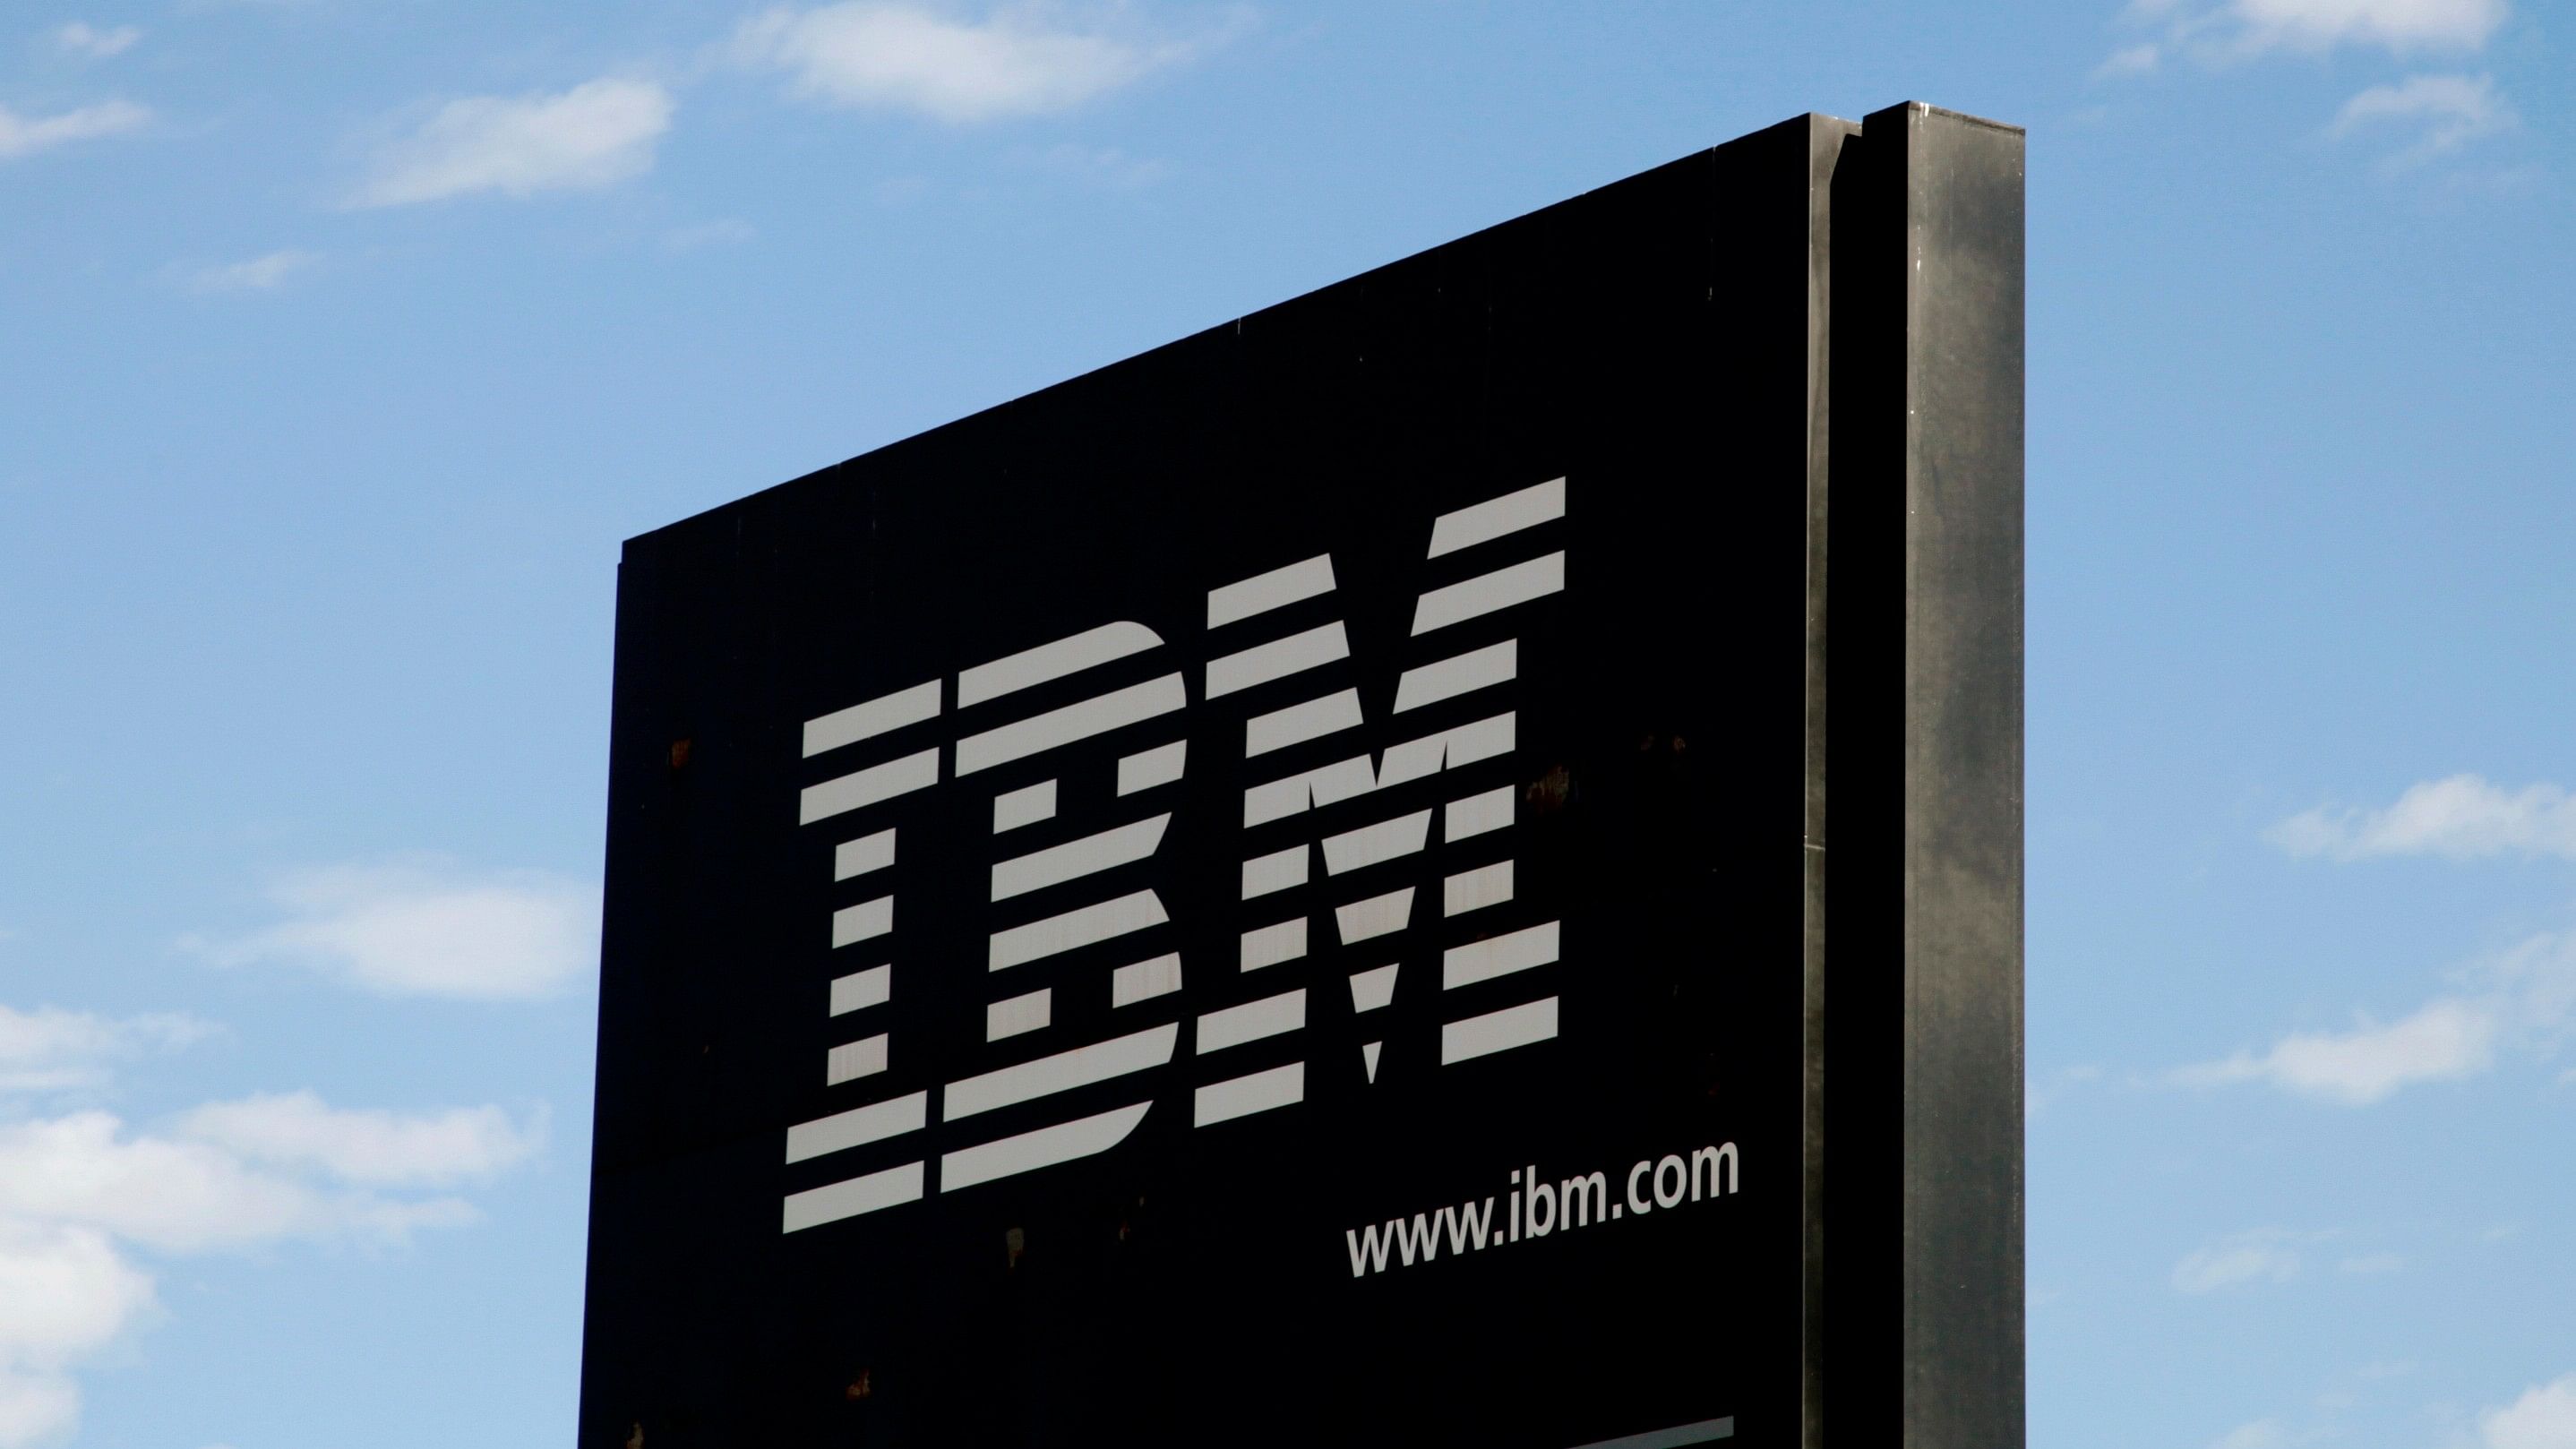 <div class="paragraphs"><p>The IBM logo.</p></div>